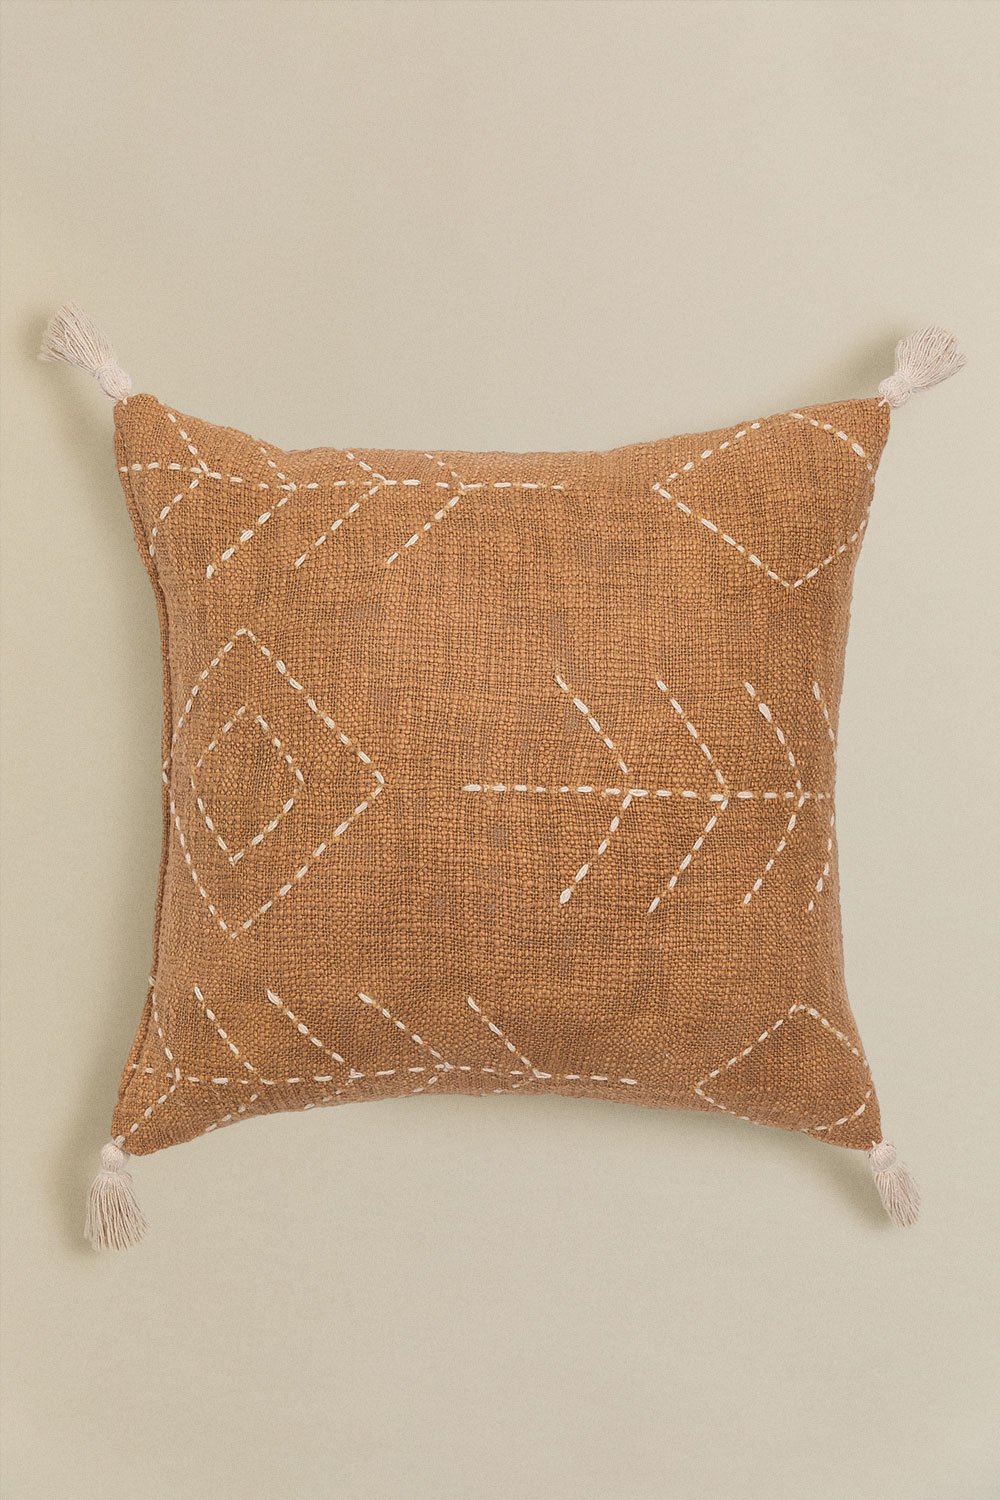  Cuscino quadrato in cotone (45x45 cm) Lemes, immagine della galleria 1